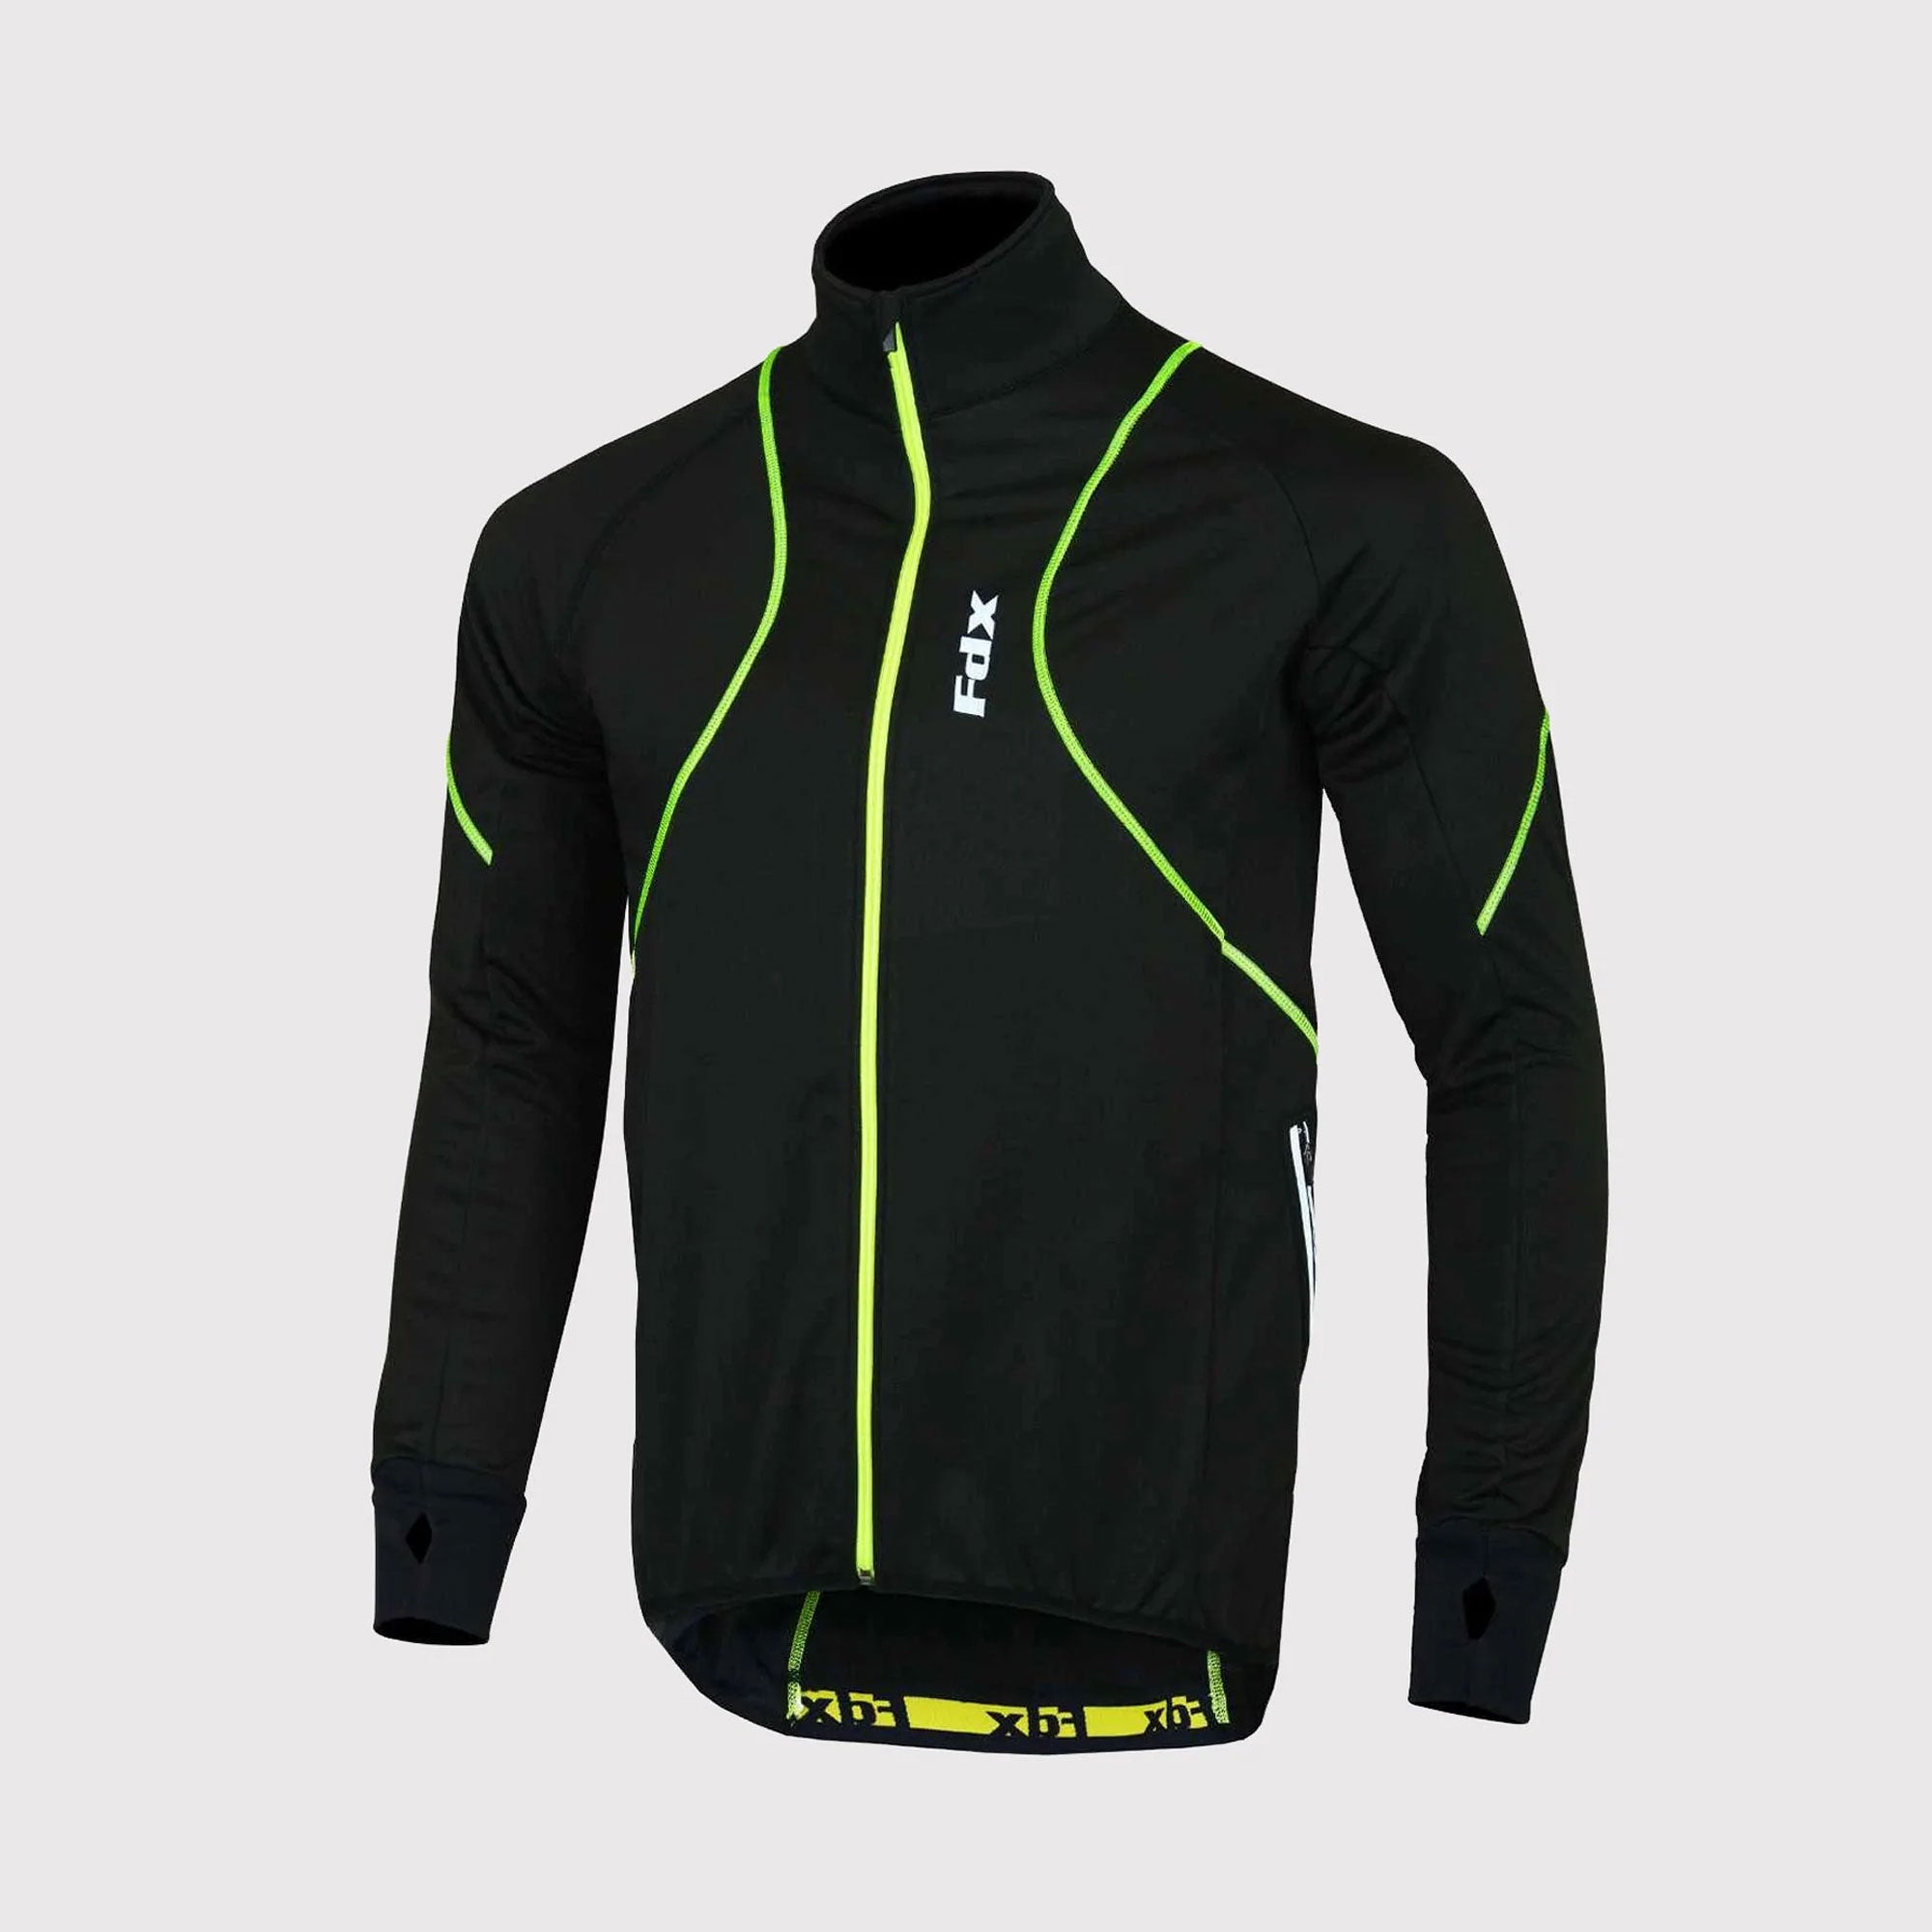 Fdx Gustt Green Men's Windproof Cycling Jacket